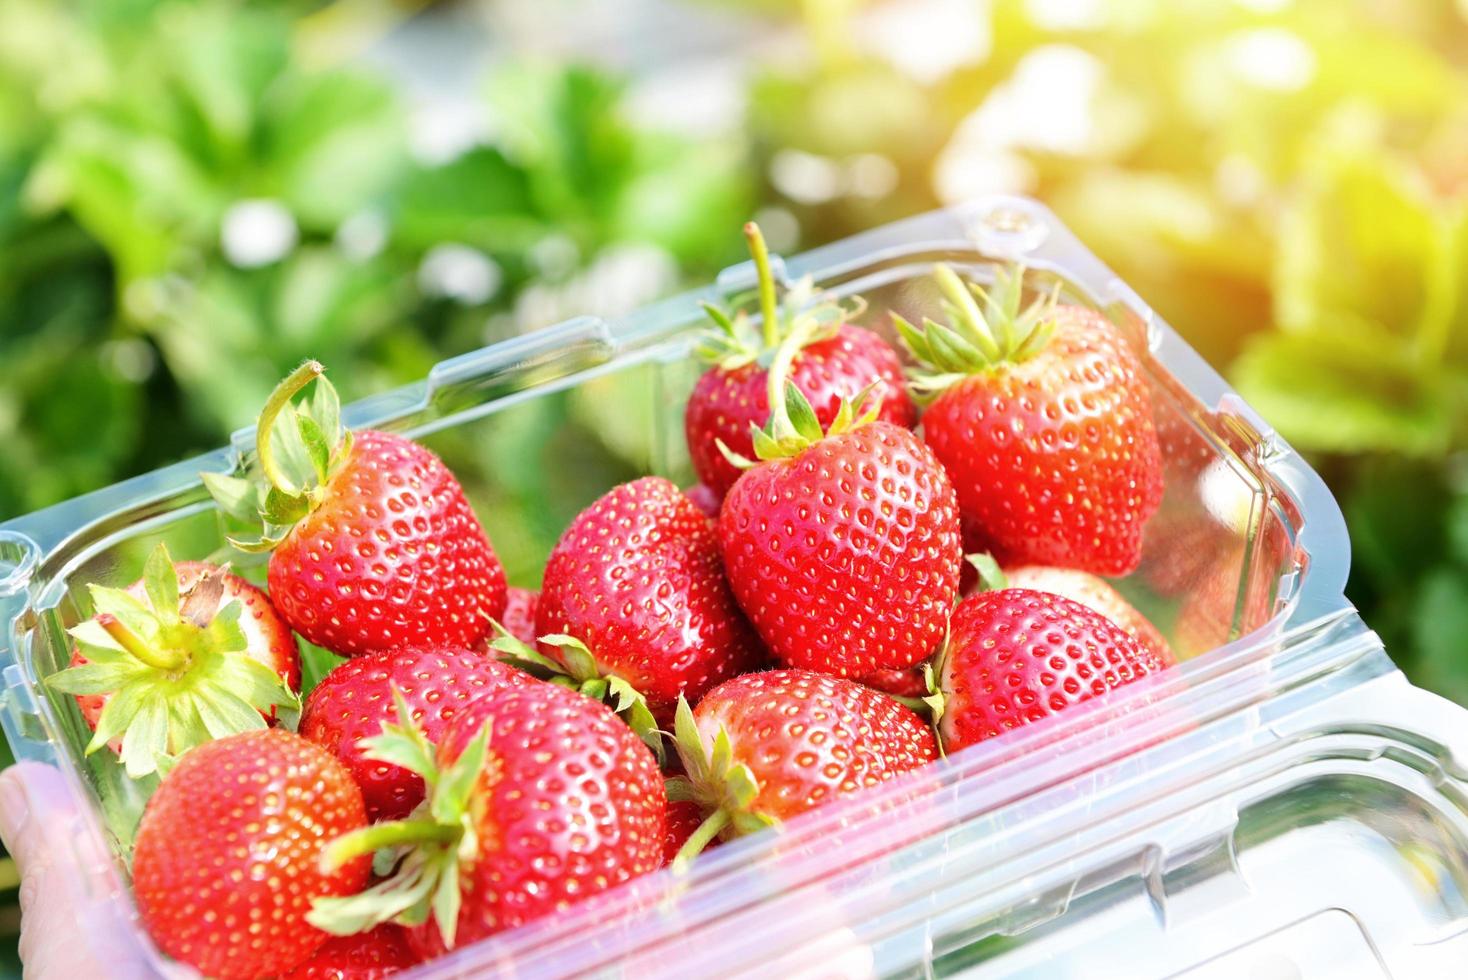 ferme de fraisiers, champ de fraises mûres fraîches pour la récolte de fraises cueillir sur une boîte en plastique dans le jardin fruits fraise ramassée en été photo